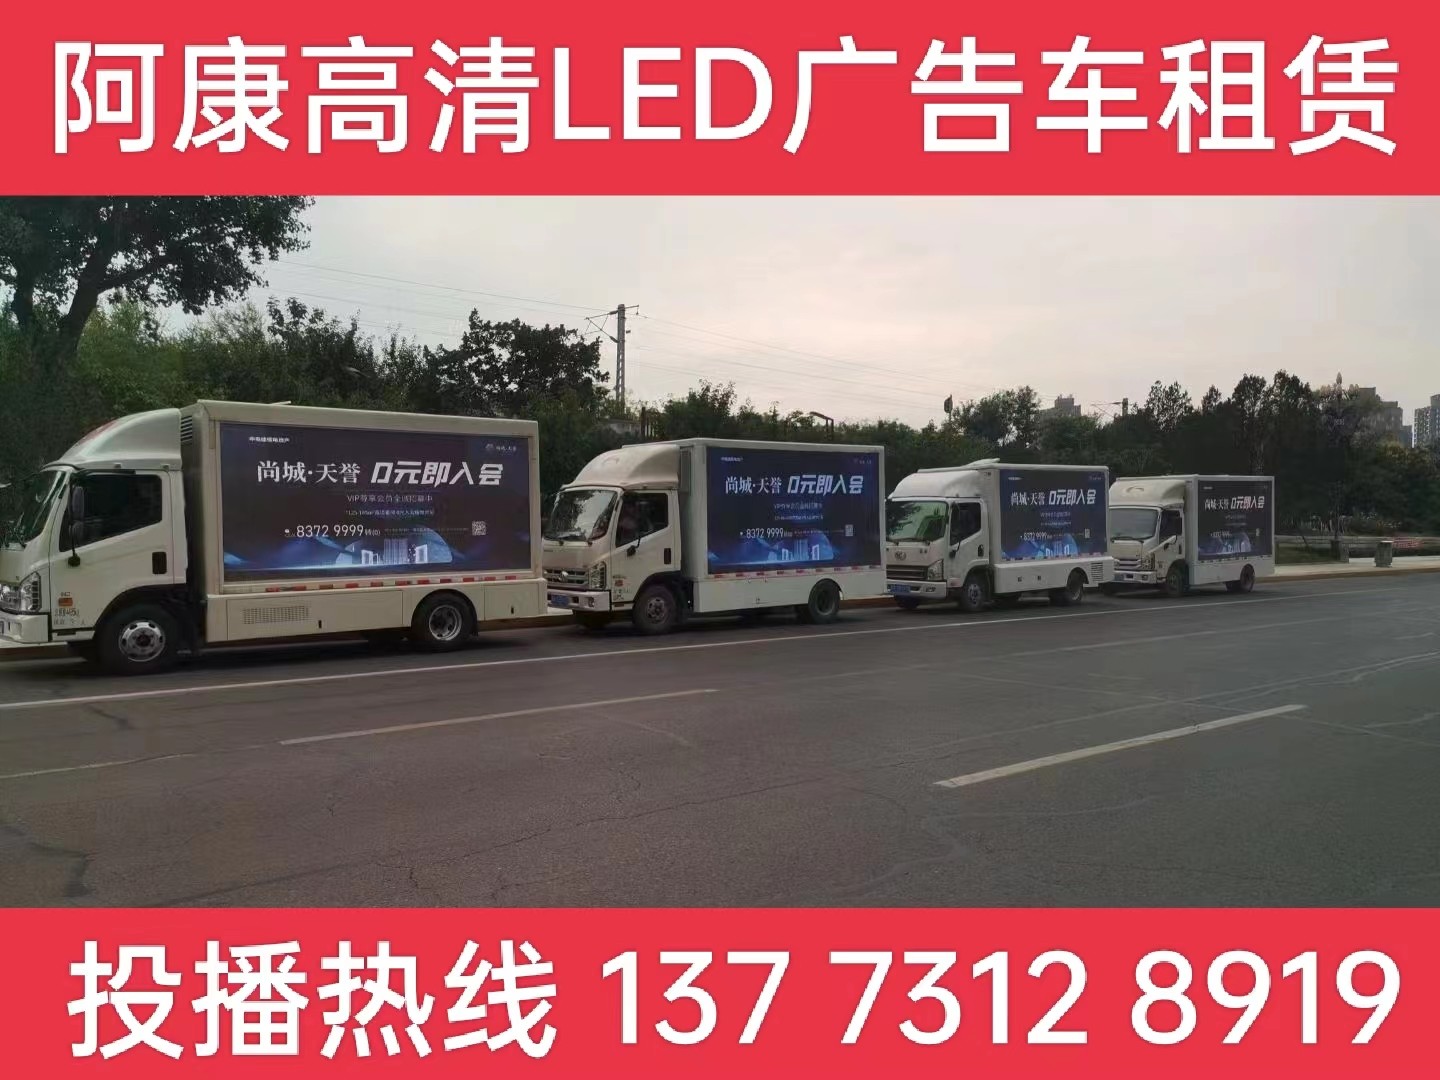 张家港LED广告车出租-某房产公司效果展示